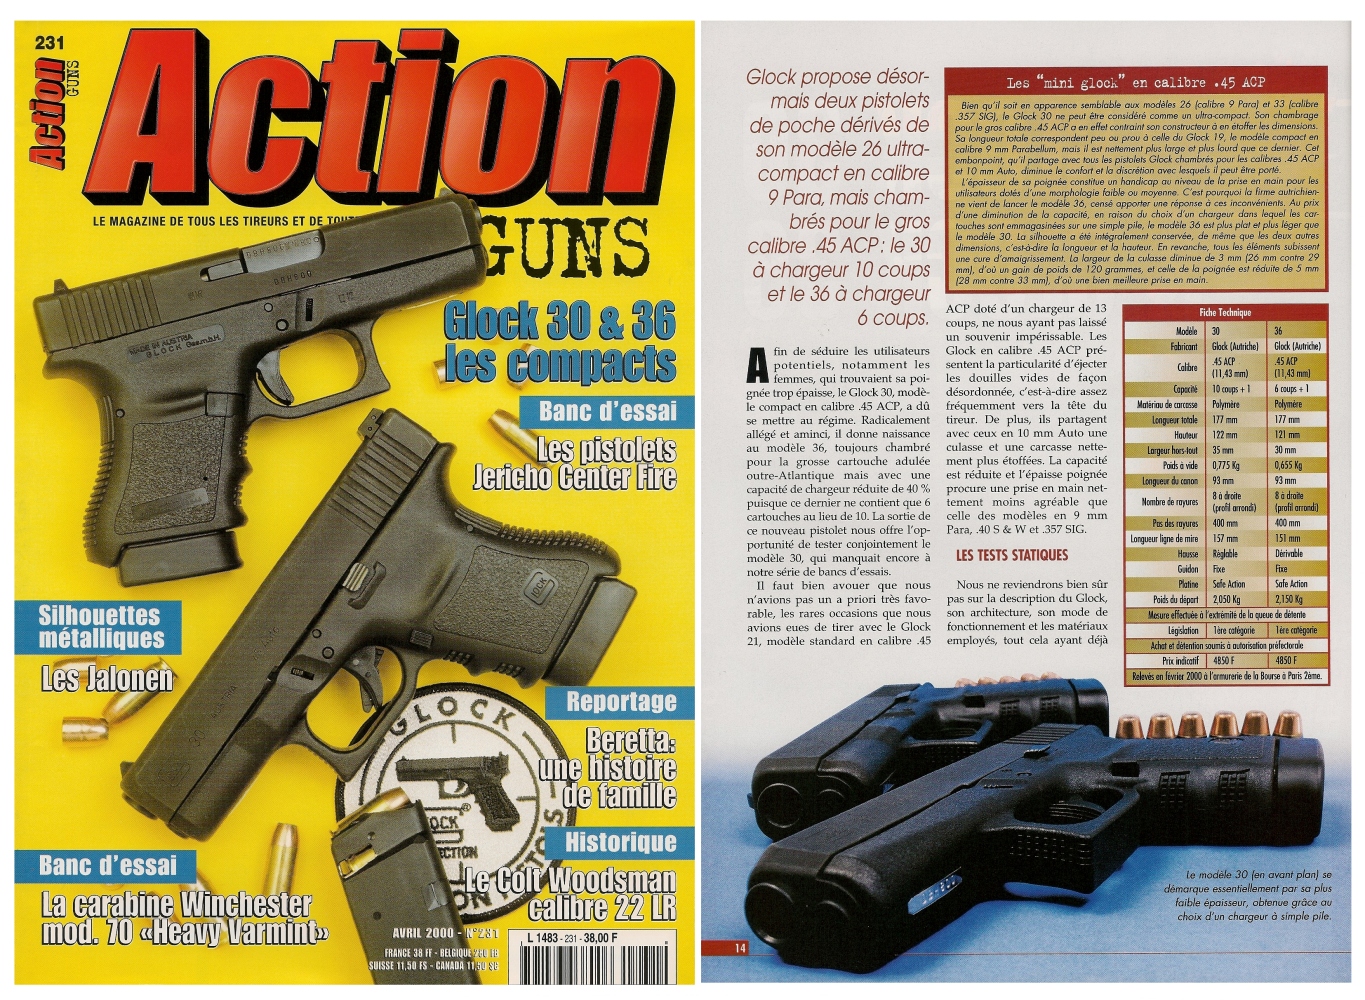 Le banc d'essai des pistolets Glock modèles 30 et 36 a été publié sur 7 pages dans le magazine Action Guns n°231 (avril 2000).